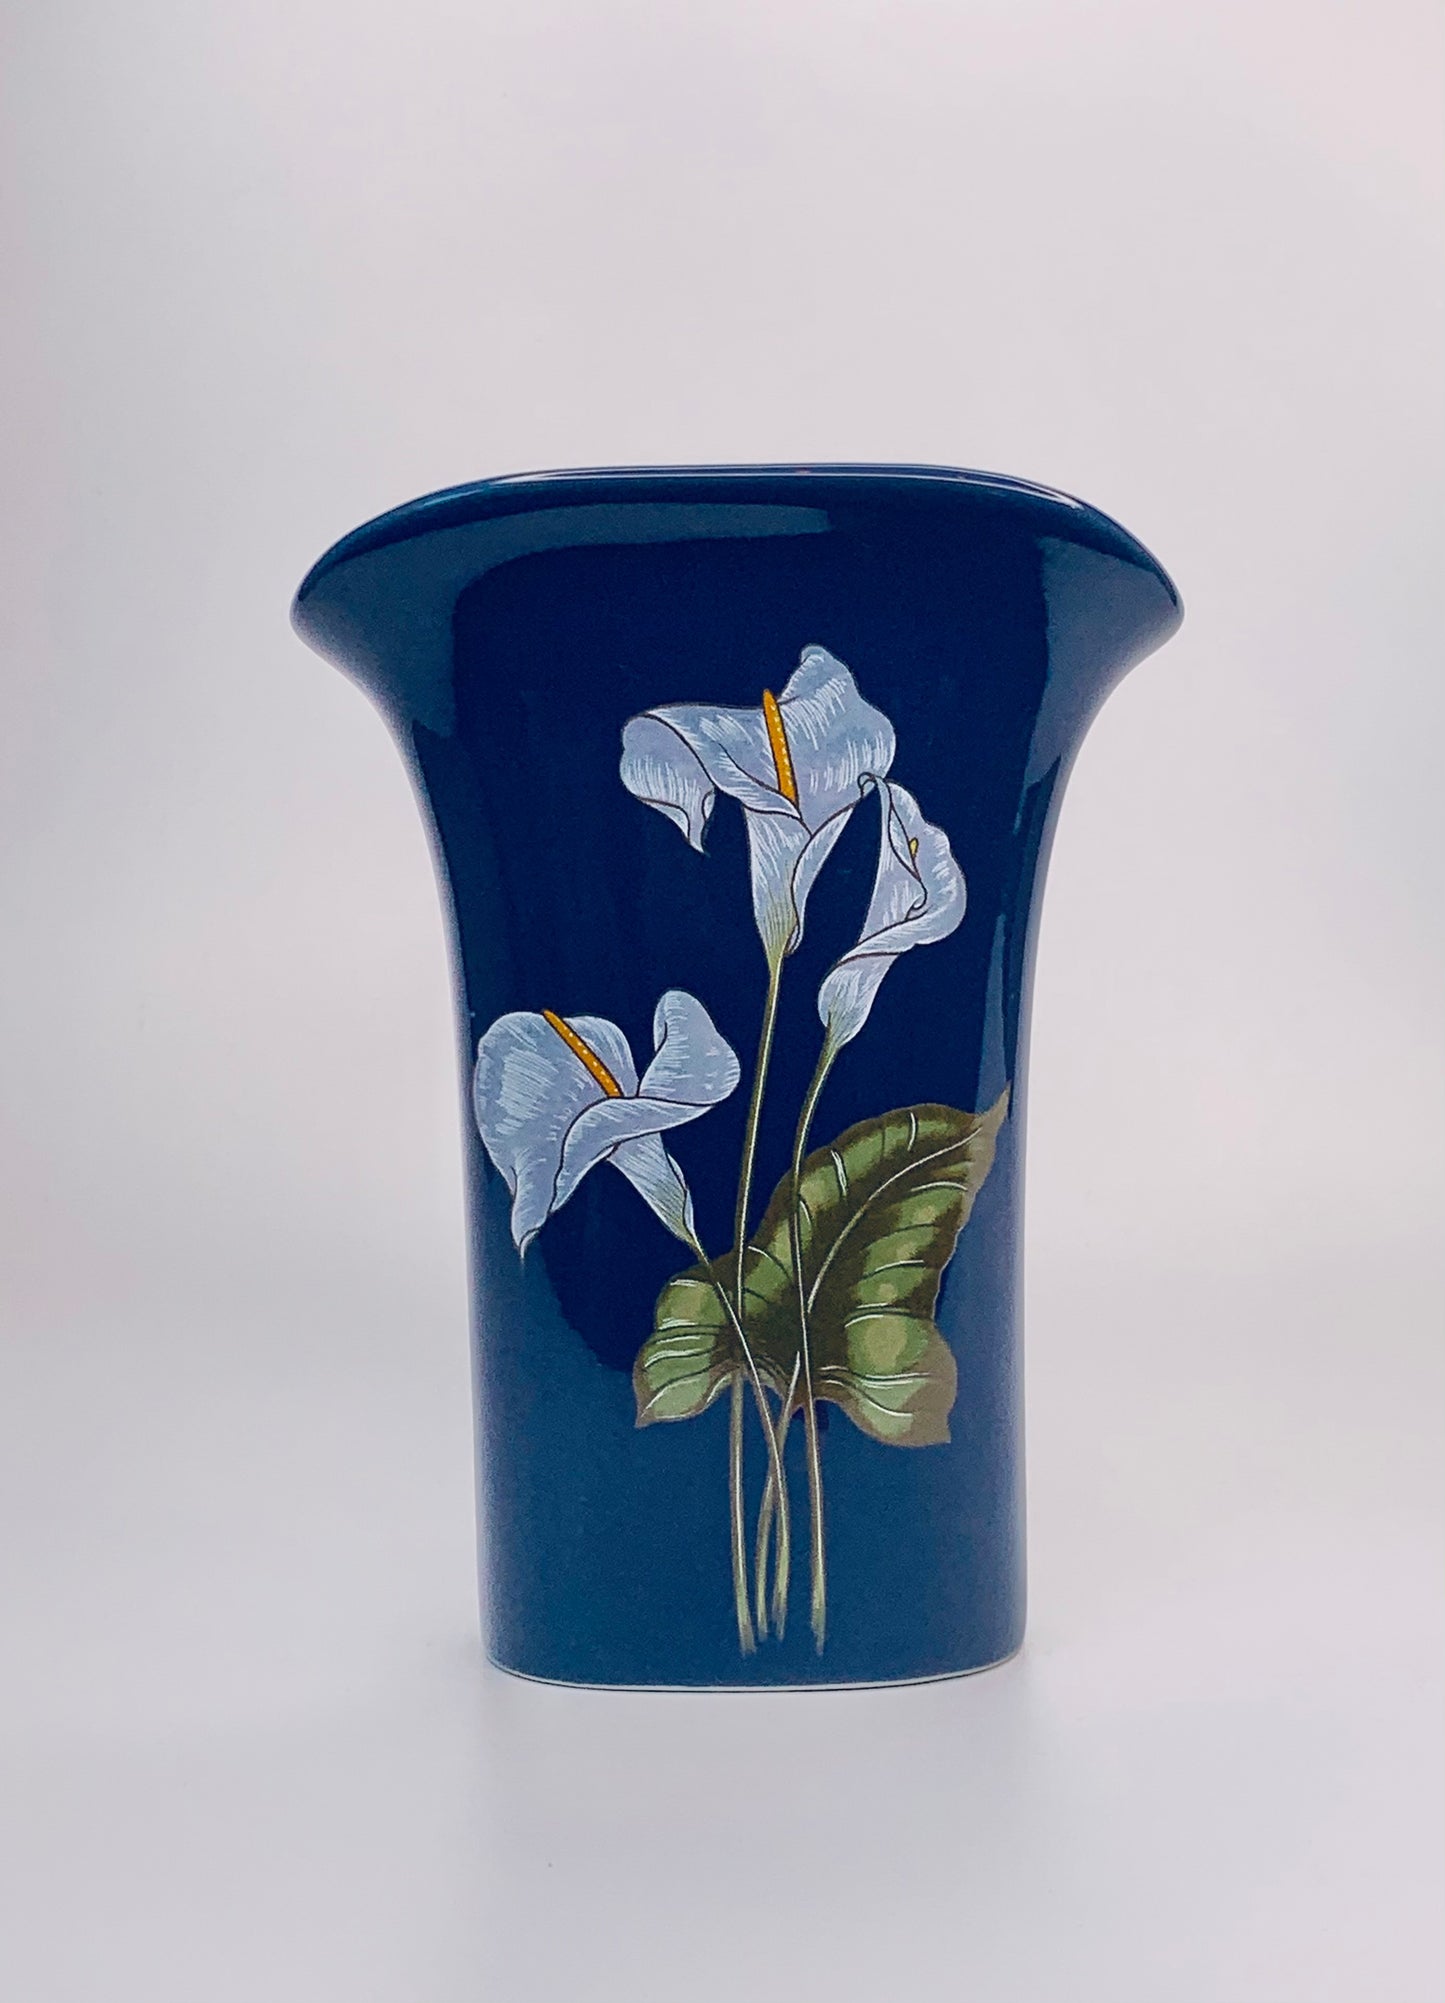 Japanese 80s porcelain vase with laminated floral design